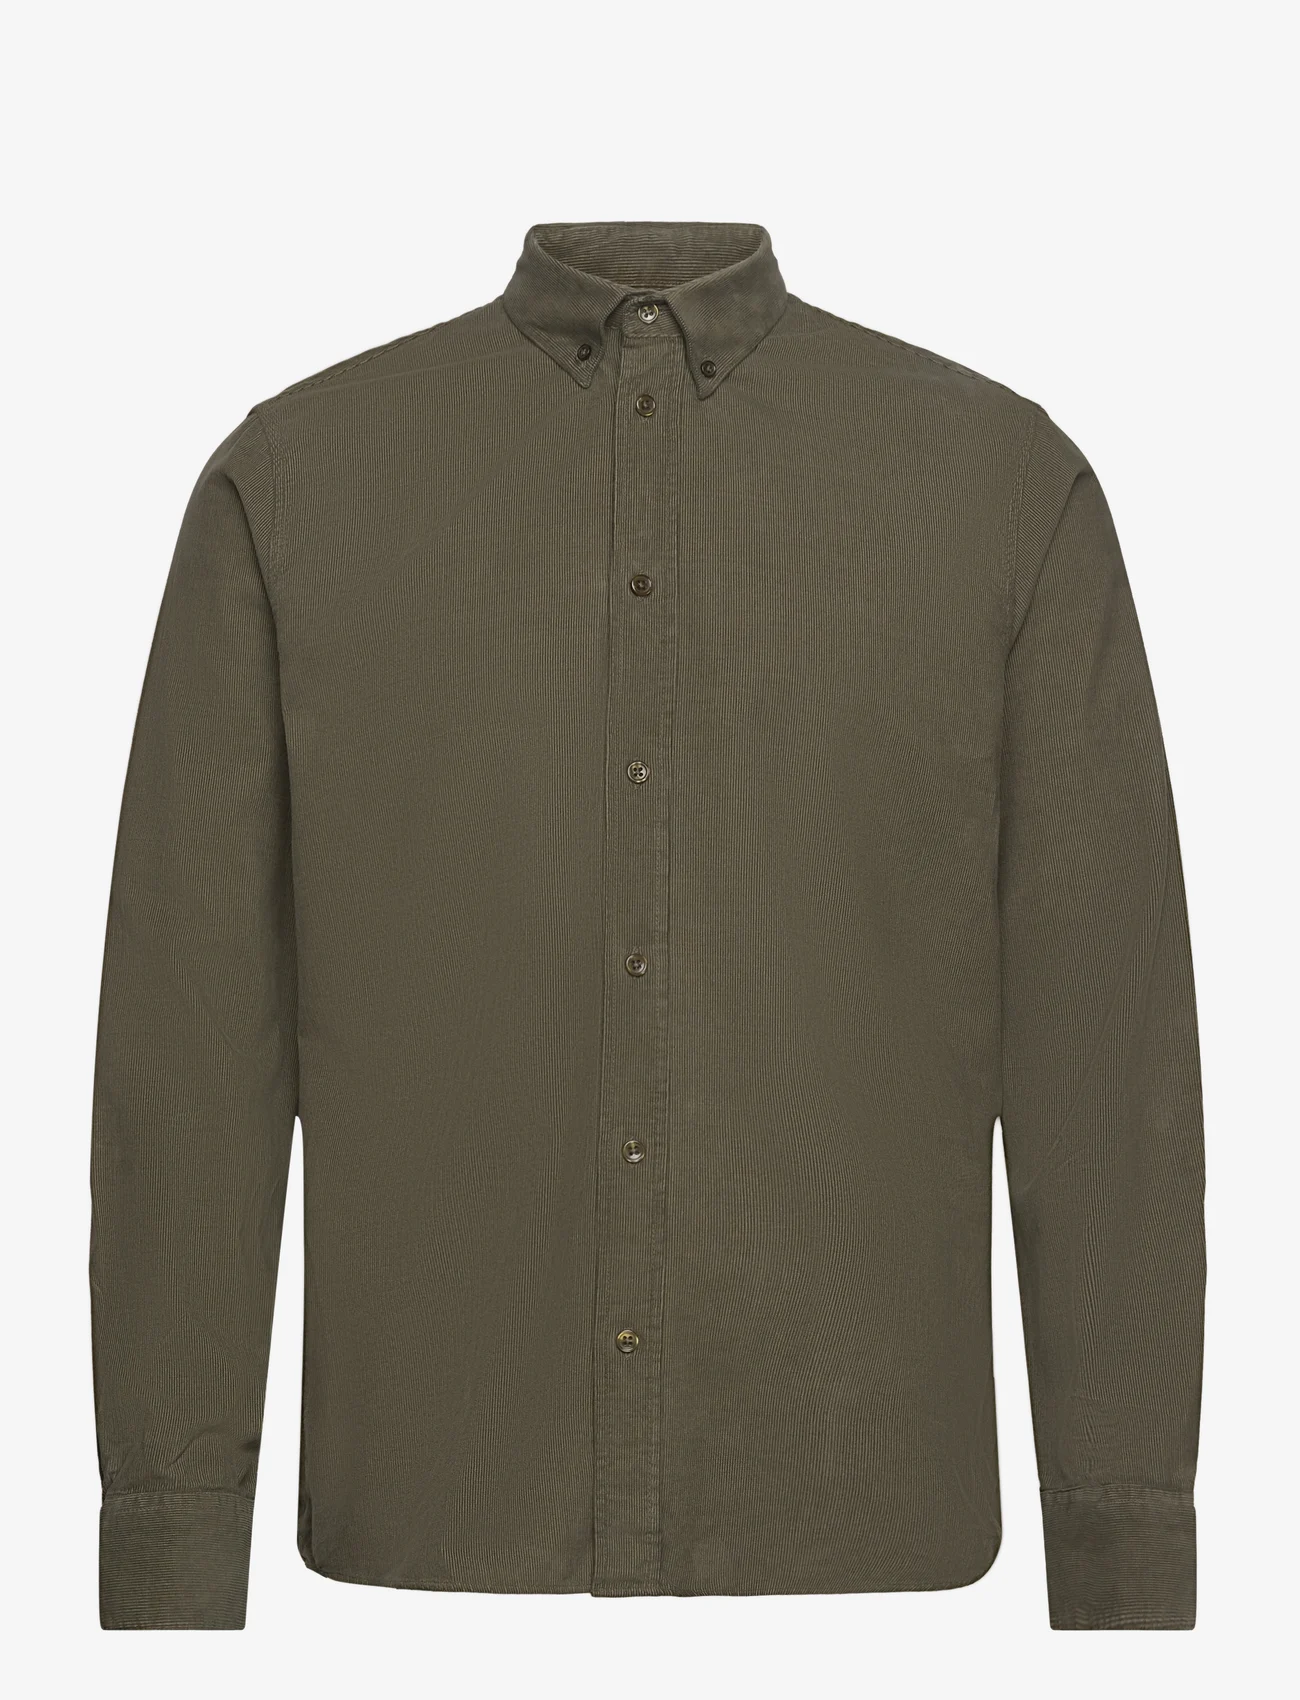 By Garment Makers - Vincent Corduroy Shirt GOTS - fløjlsskjorter - 1184 russian olive - 0